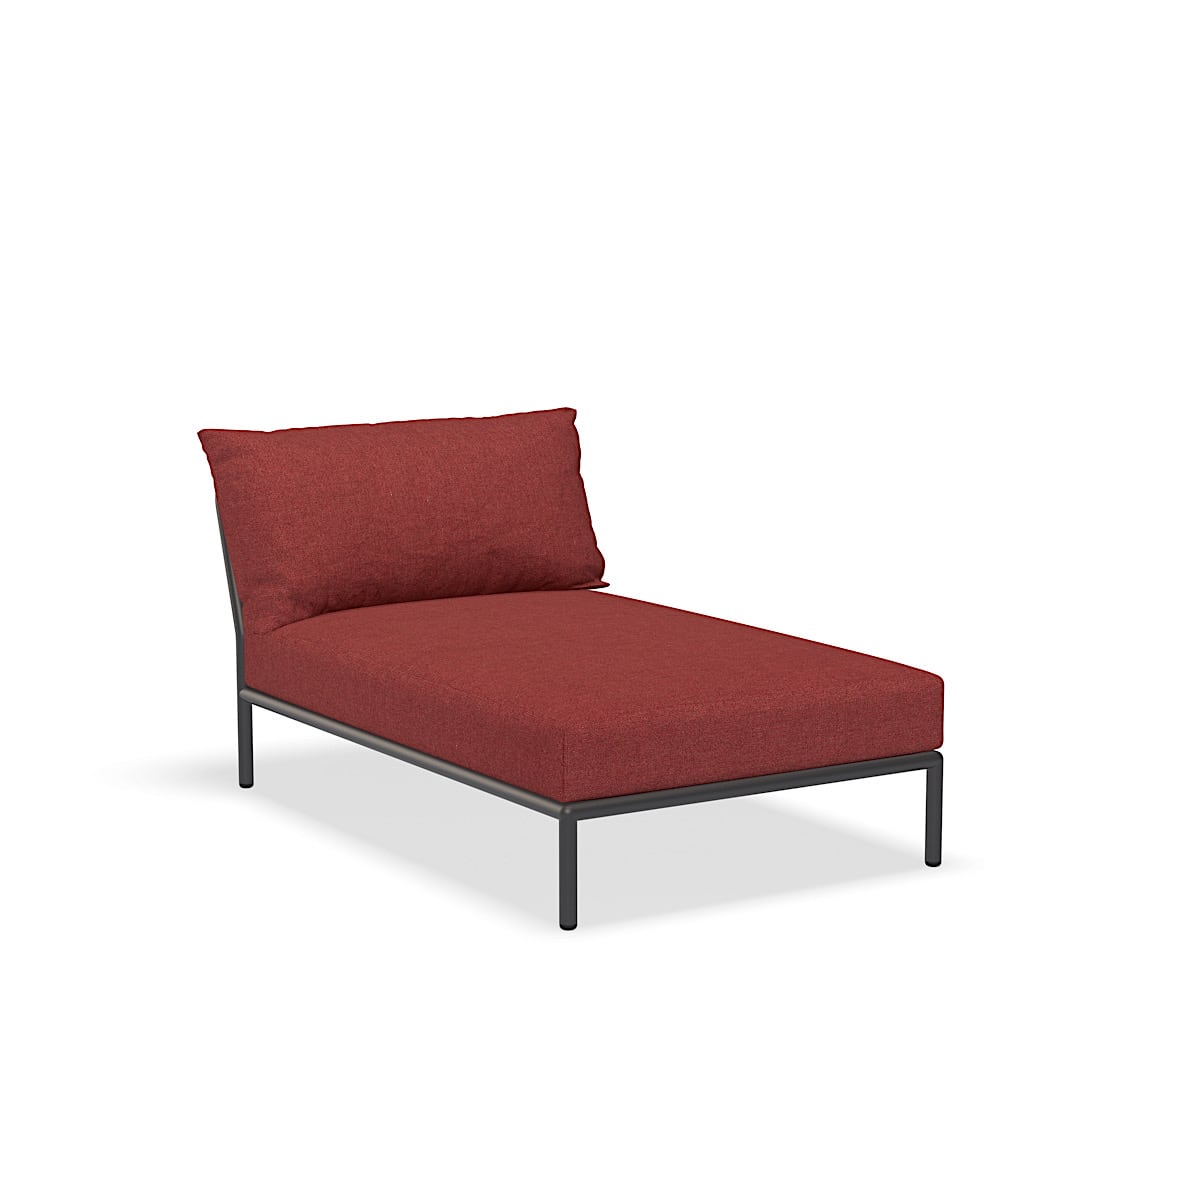 Lounge stol - 22209-1651 - Lounge stol, Scarlet (HERITAGE), mørkegrå struktur